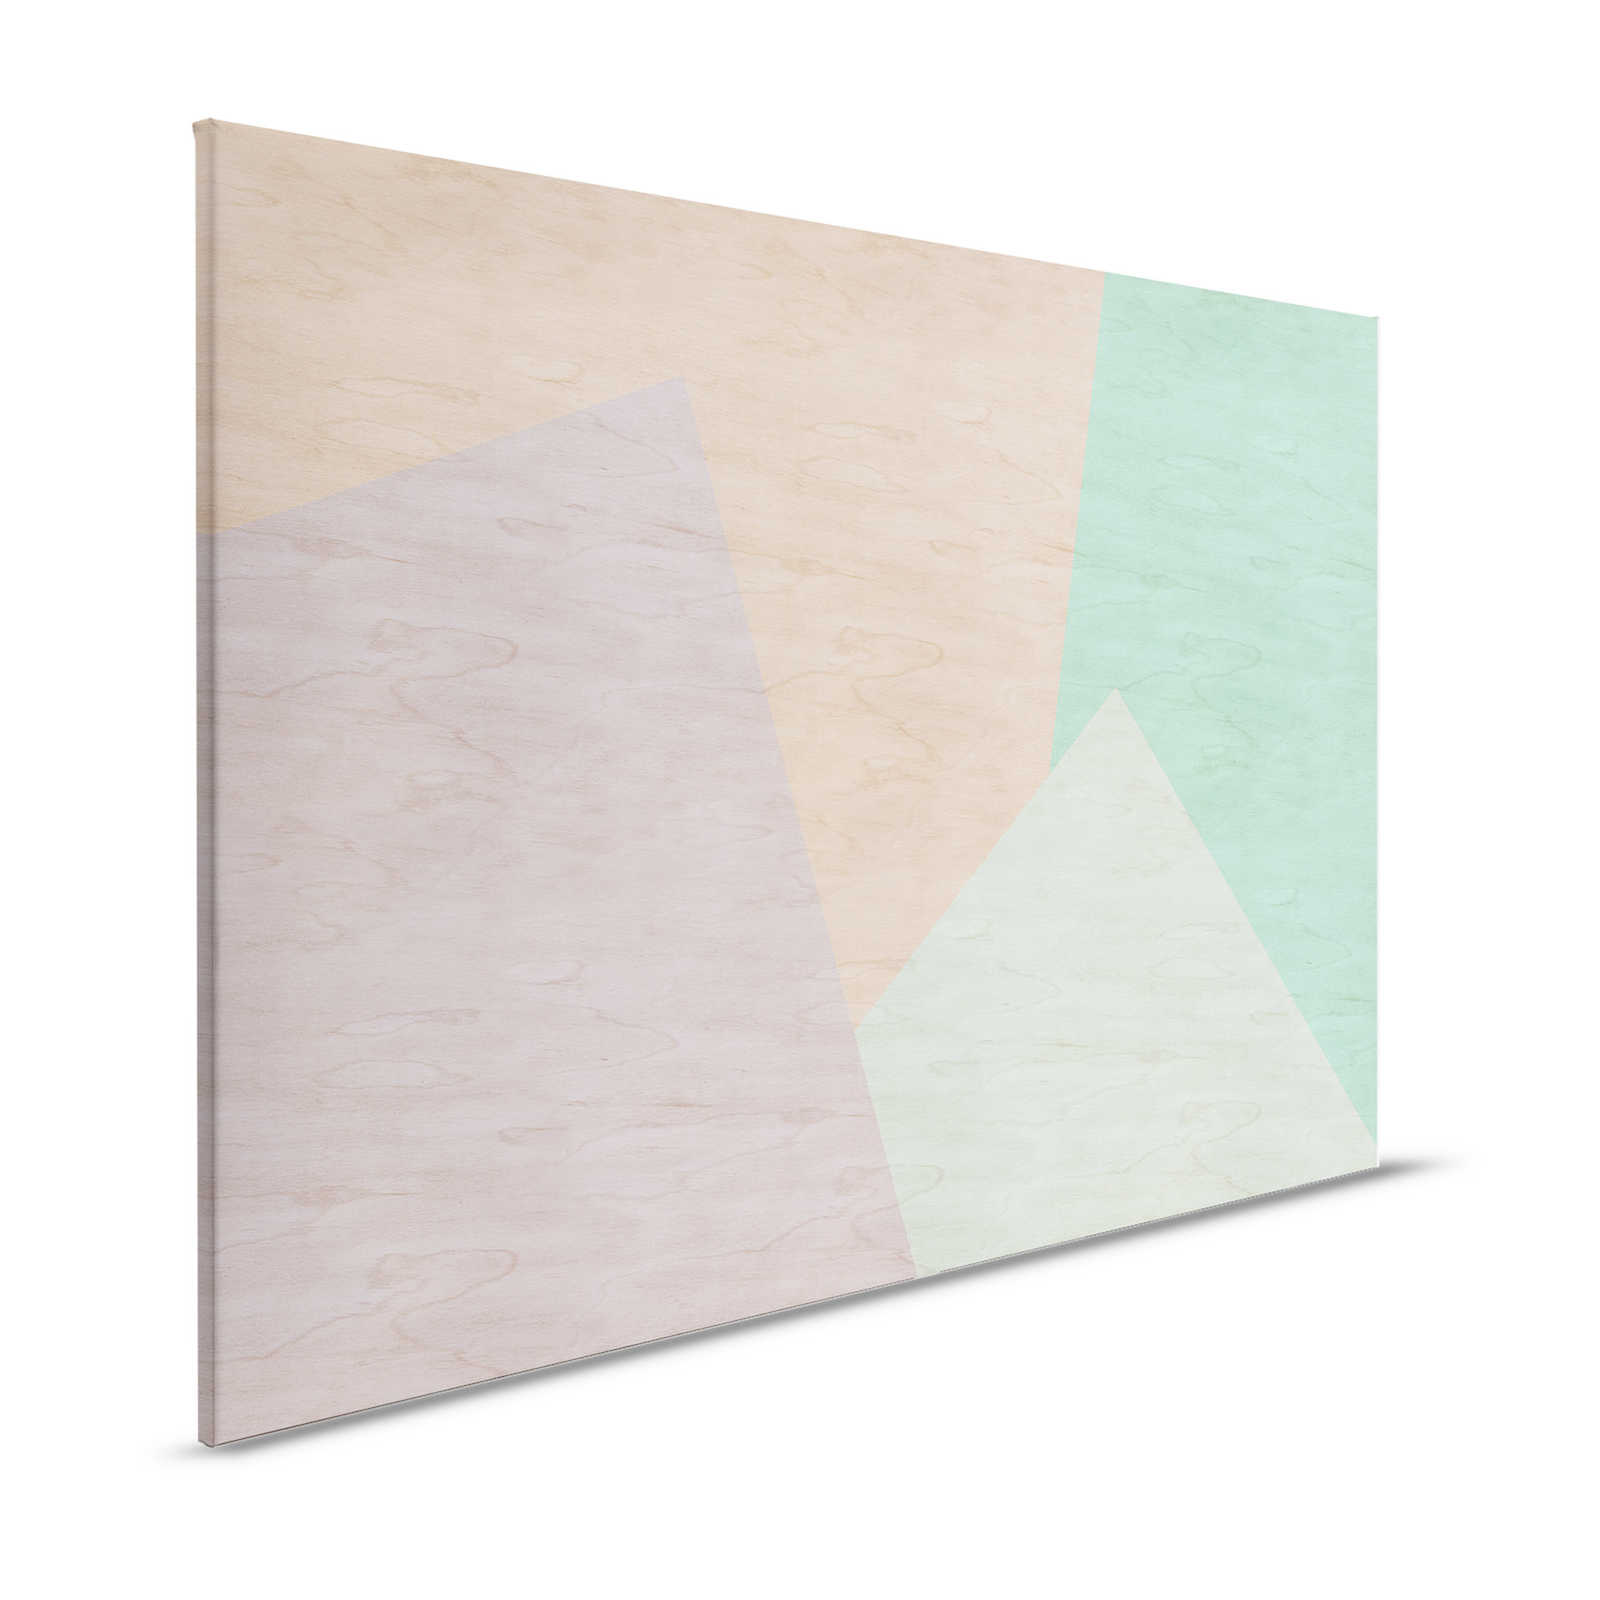 Inaly 1 - Lienzo abstracto y colorista con aspecto de contrachapado - 1,20 m x 0,80 m
